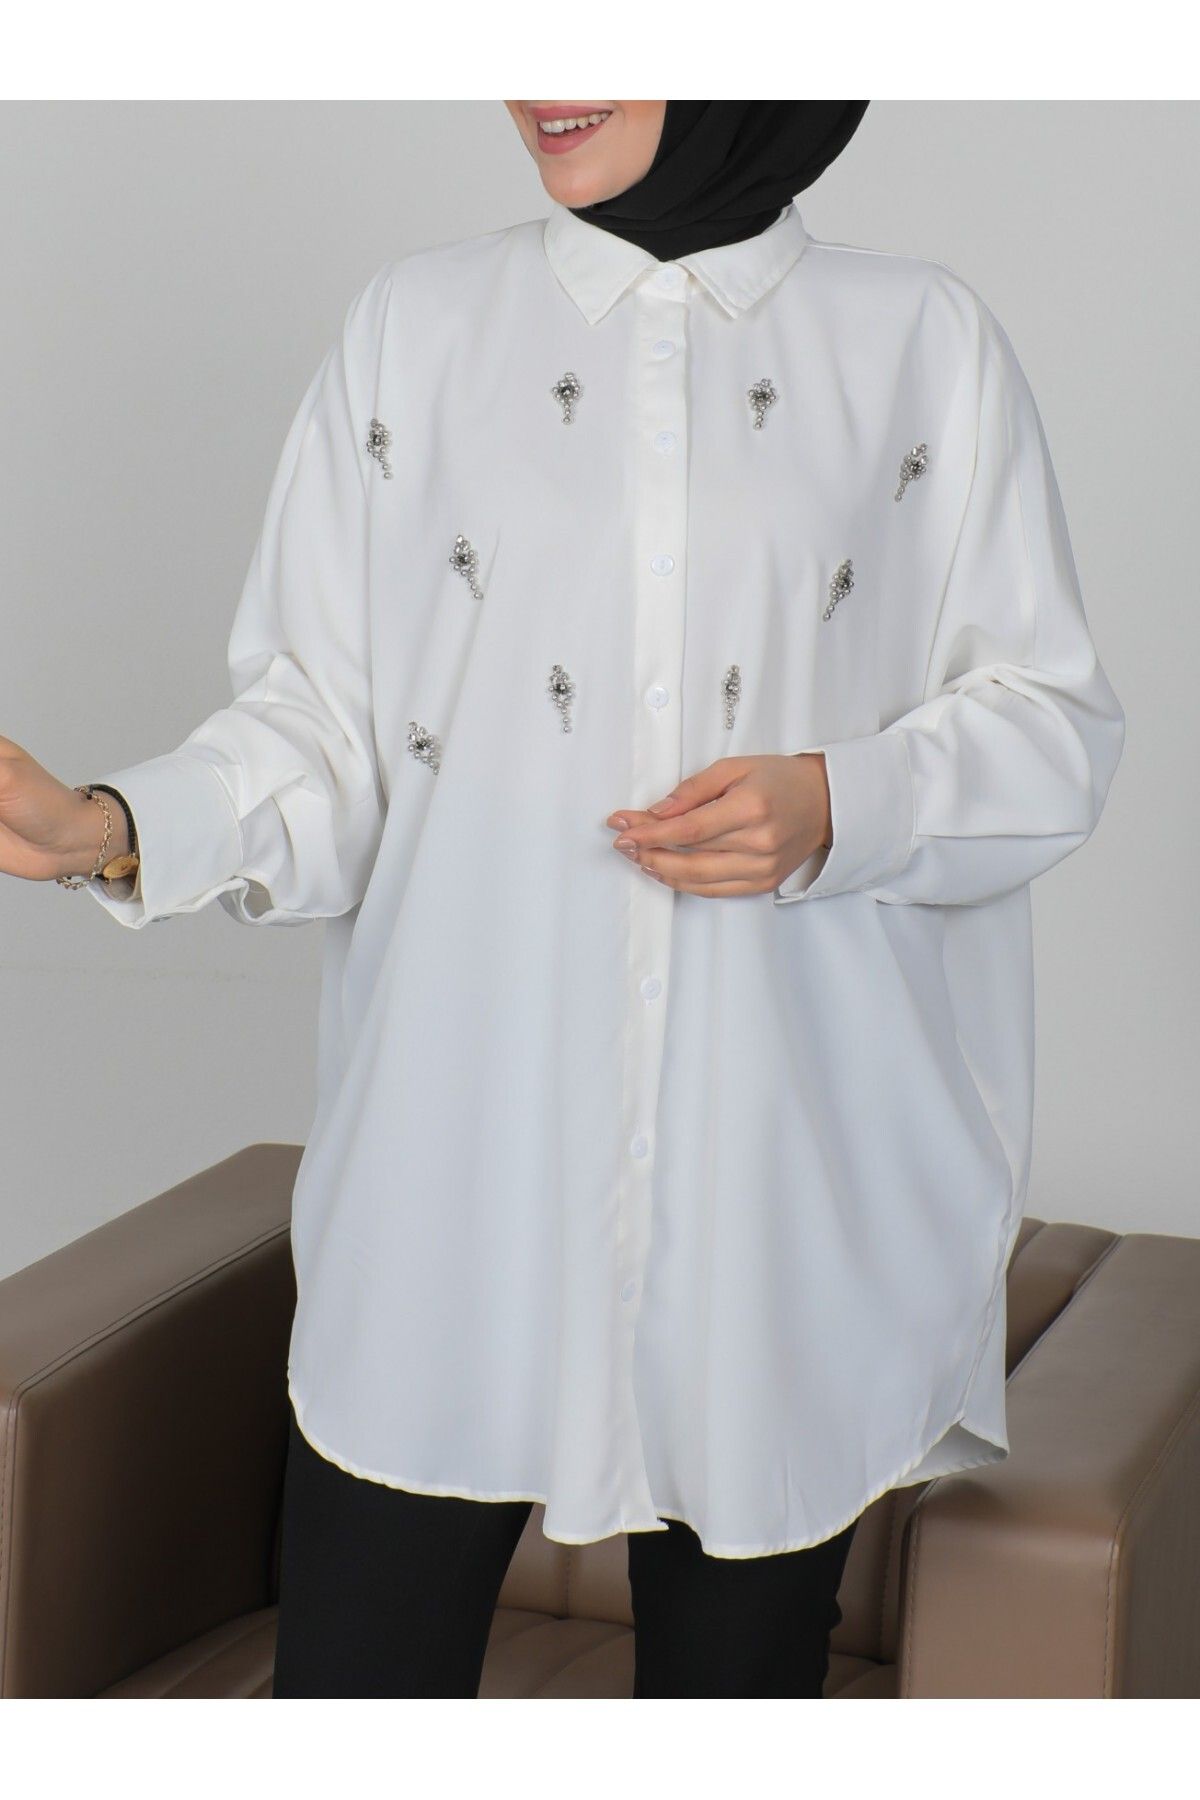 Modamorfo Önü Taşlı Boydan Düğmeli Salaş Gömlek